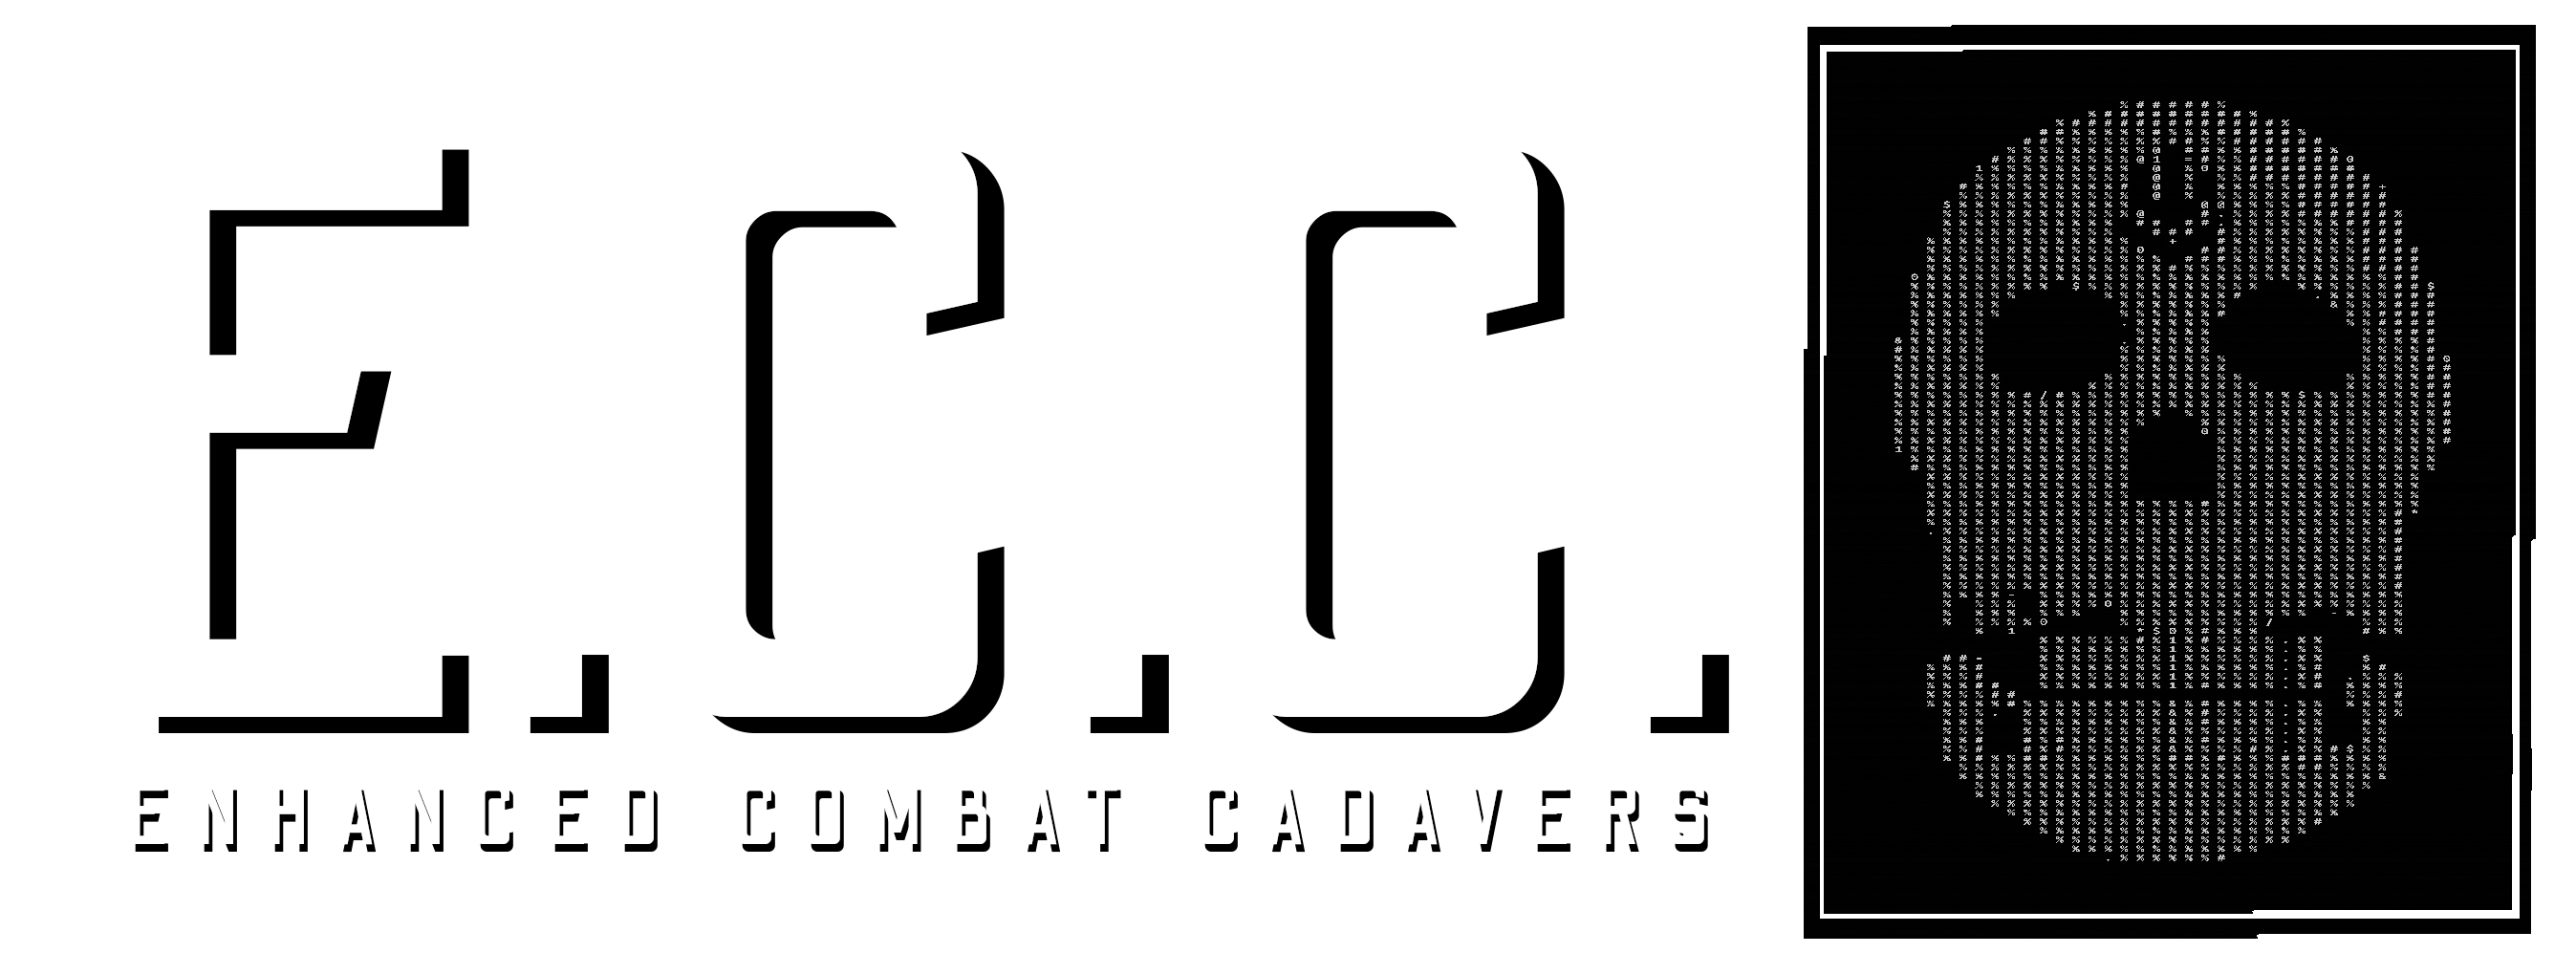 E.C.C.: ENHANCED COMBAT CADAVERS